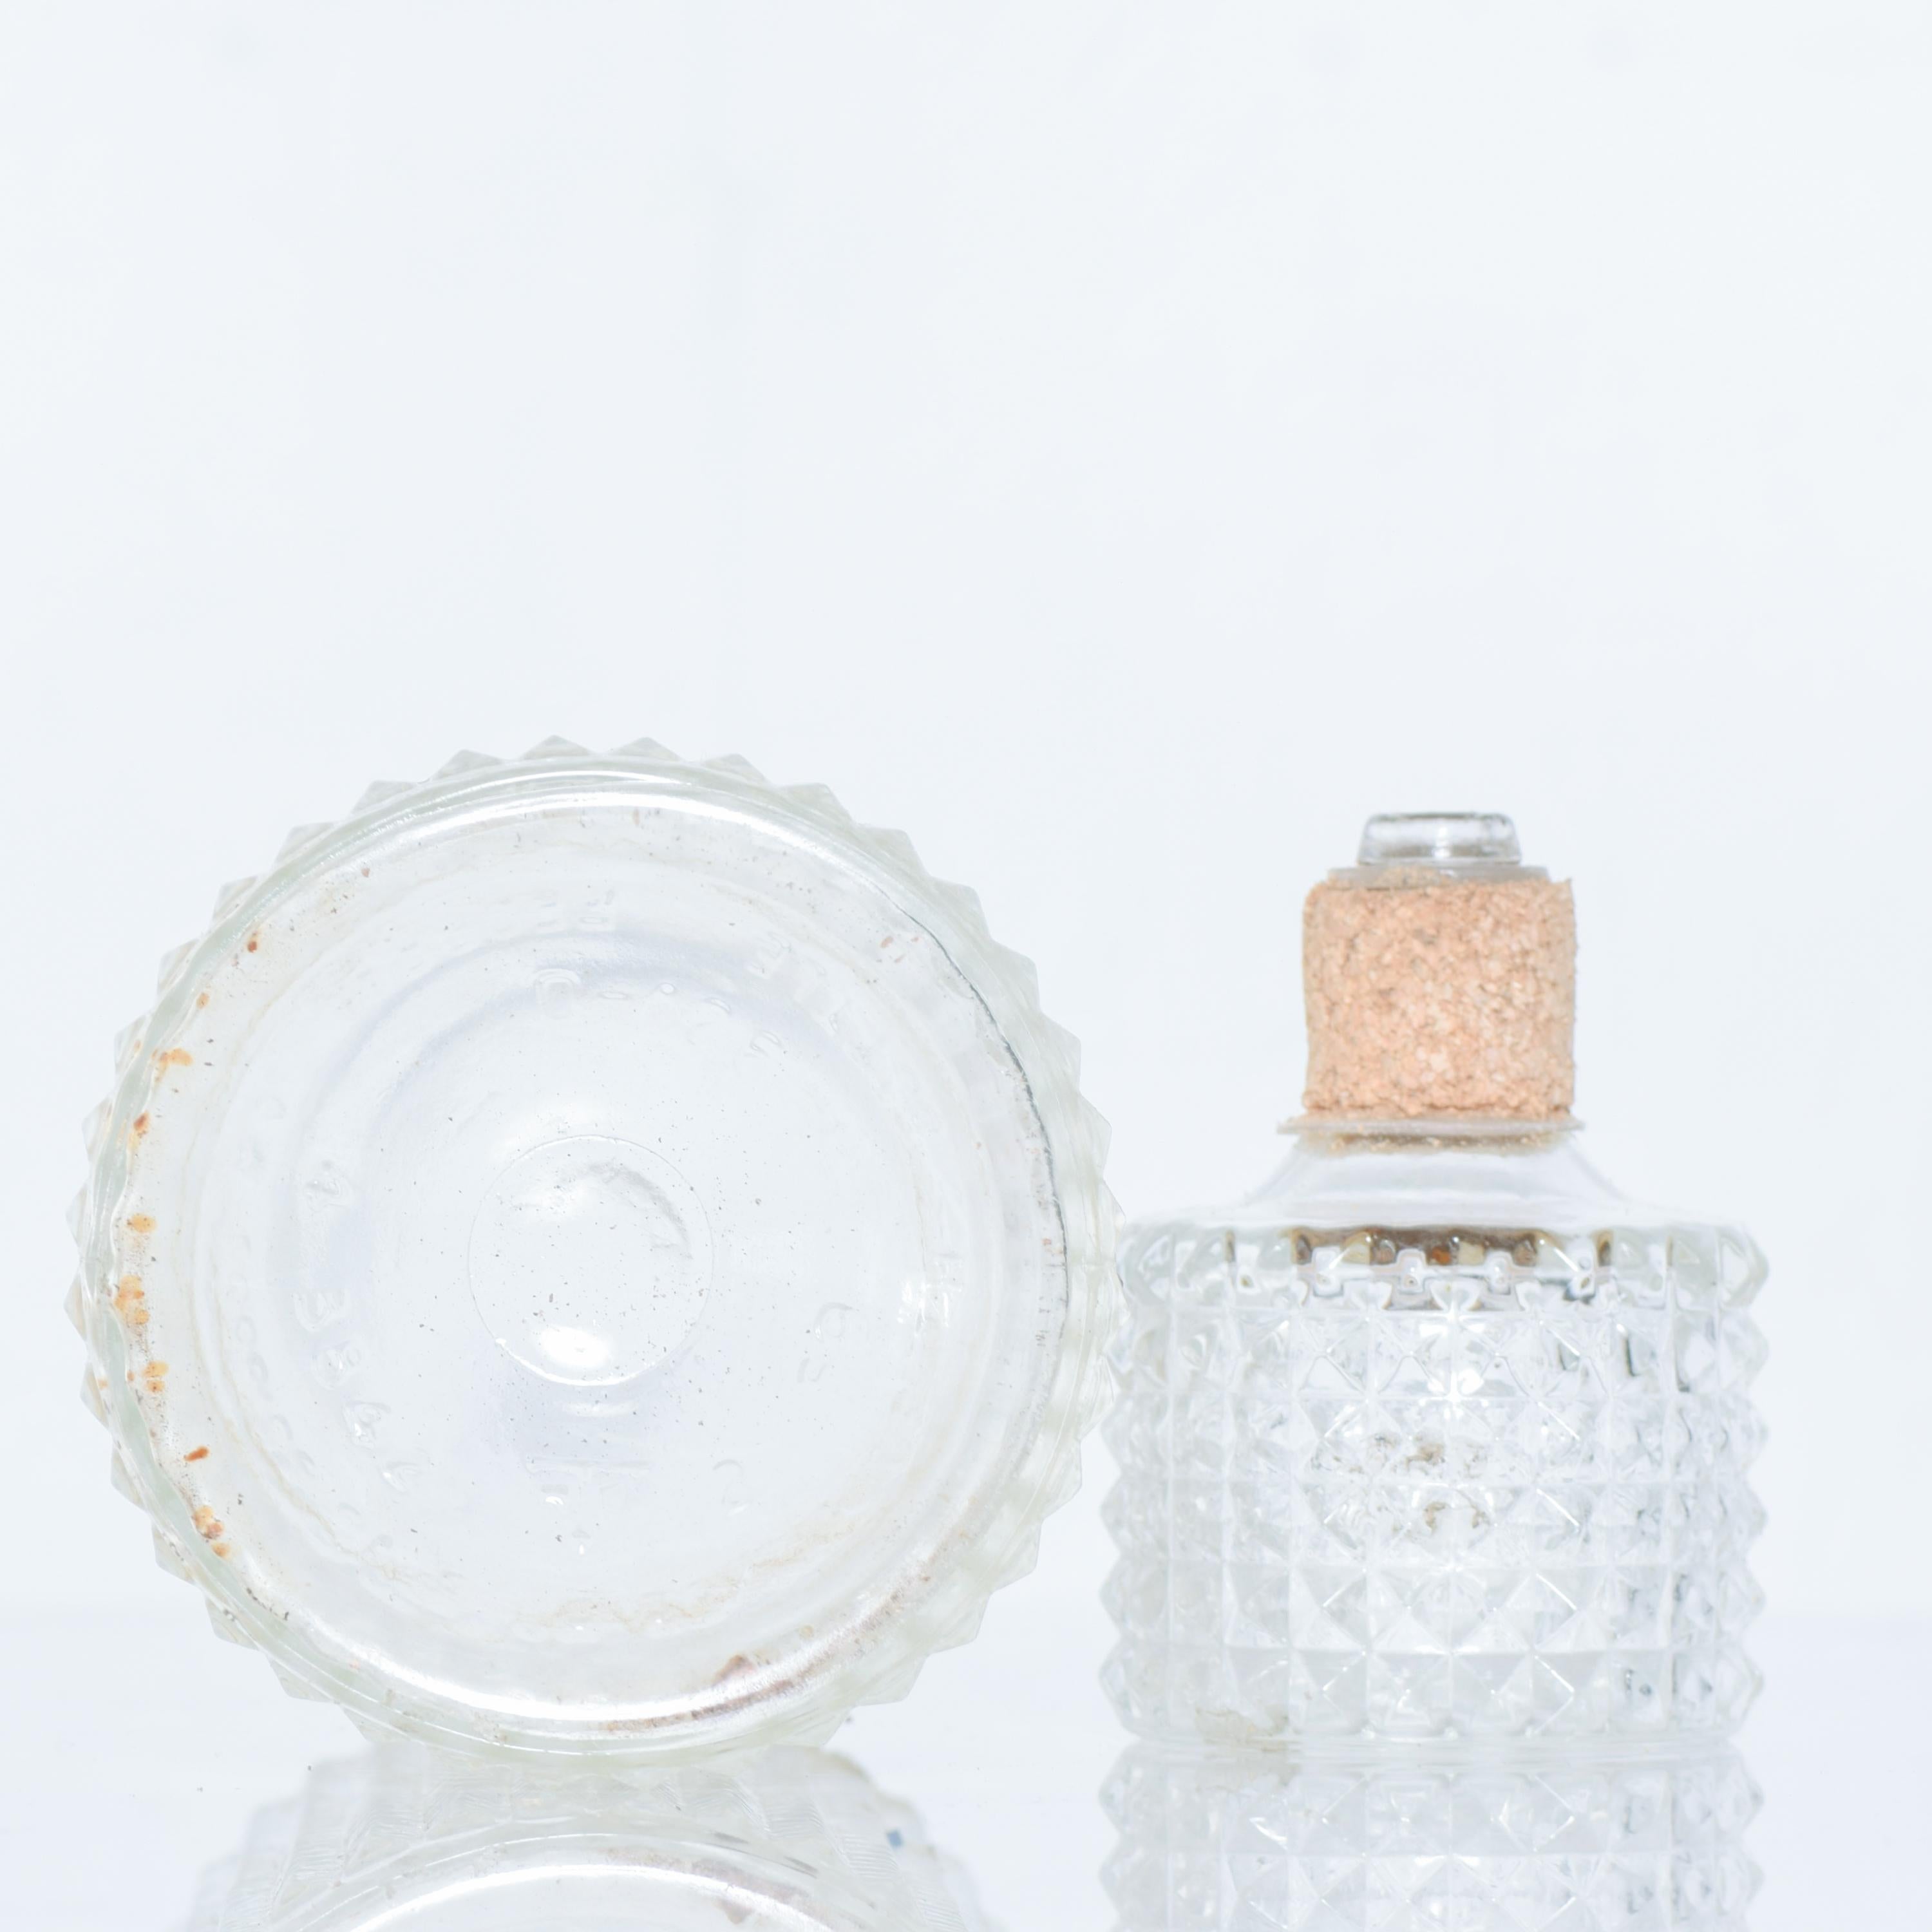 American 1970s Modern Whiskey Bottle Decanter Diamond Cut-Glass Cork Stopper